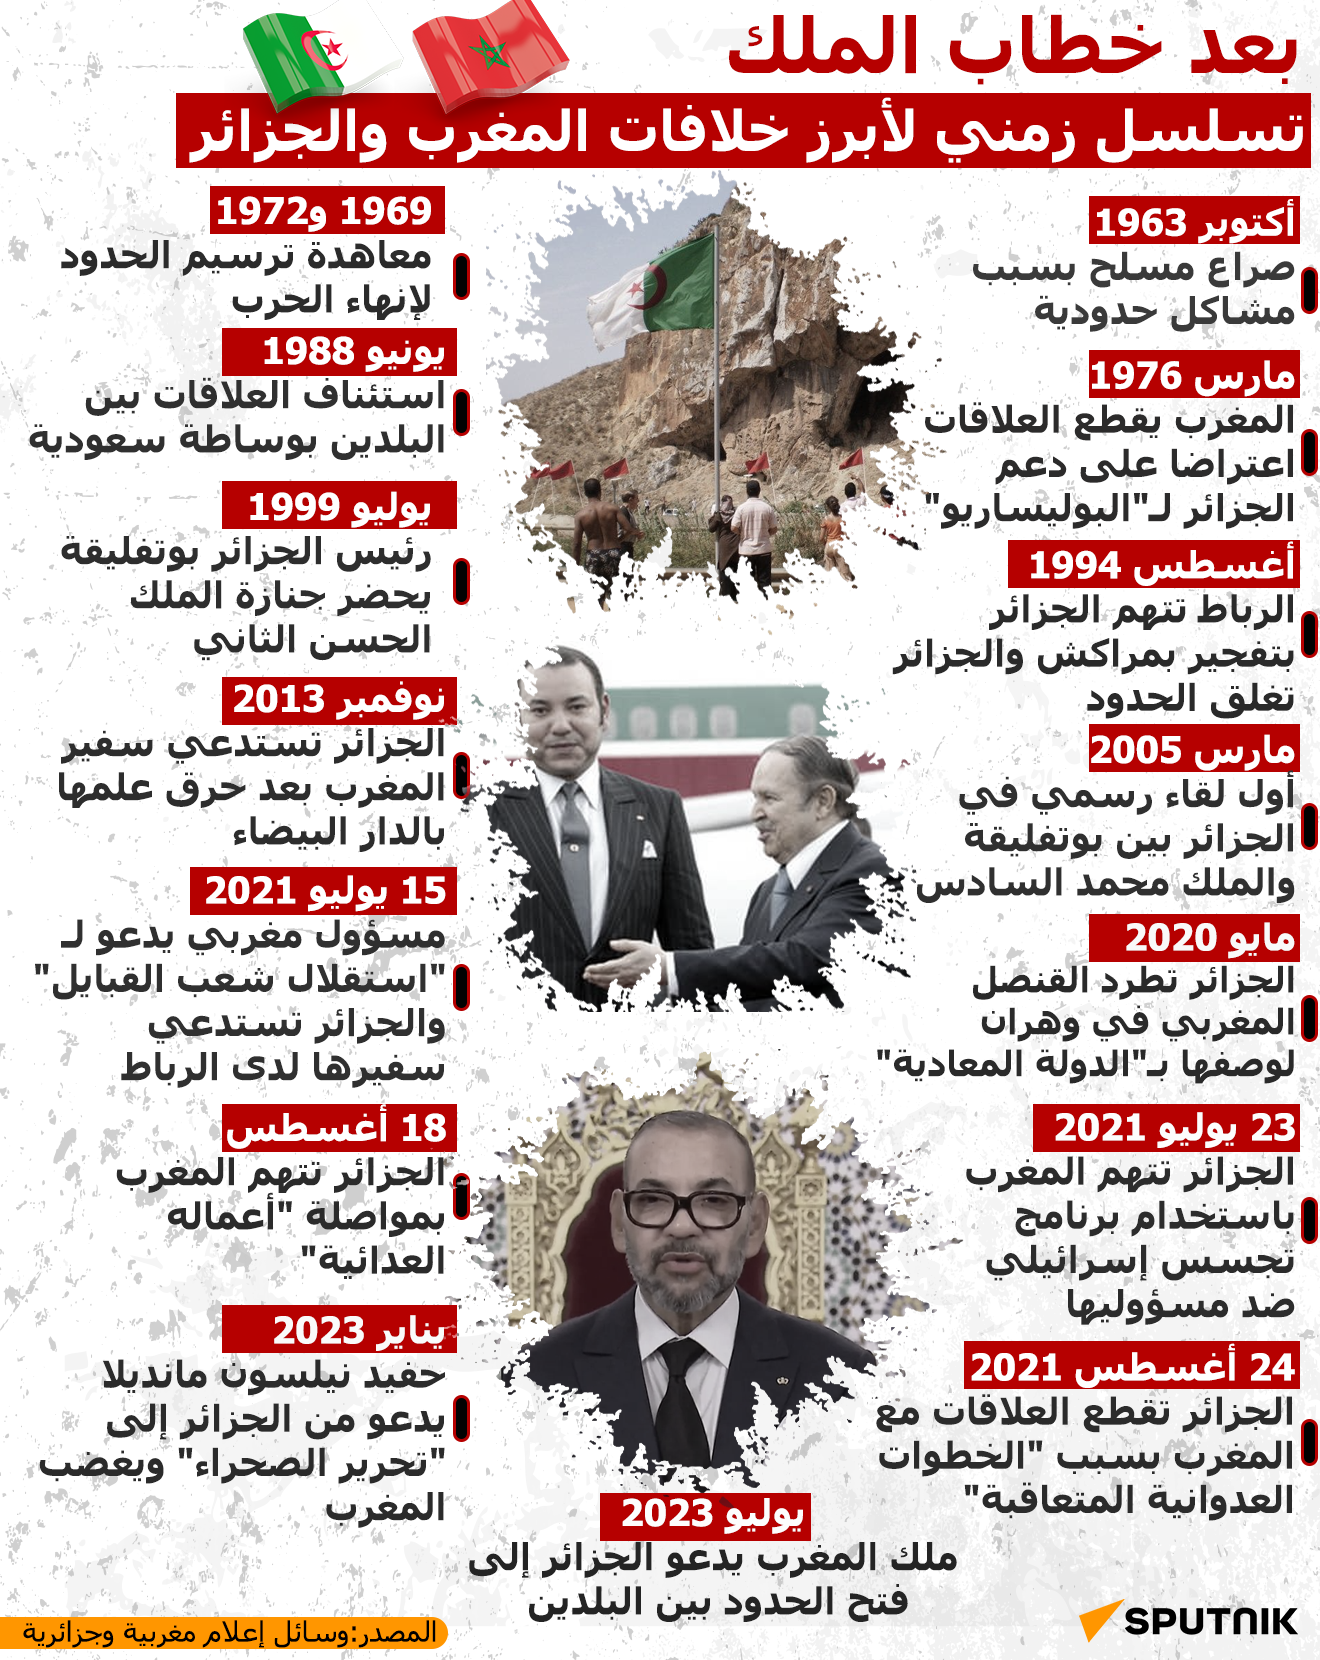 تسلسل زمني لأبرز خلافات المغرب والجزائر - سبوتنيك عربي